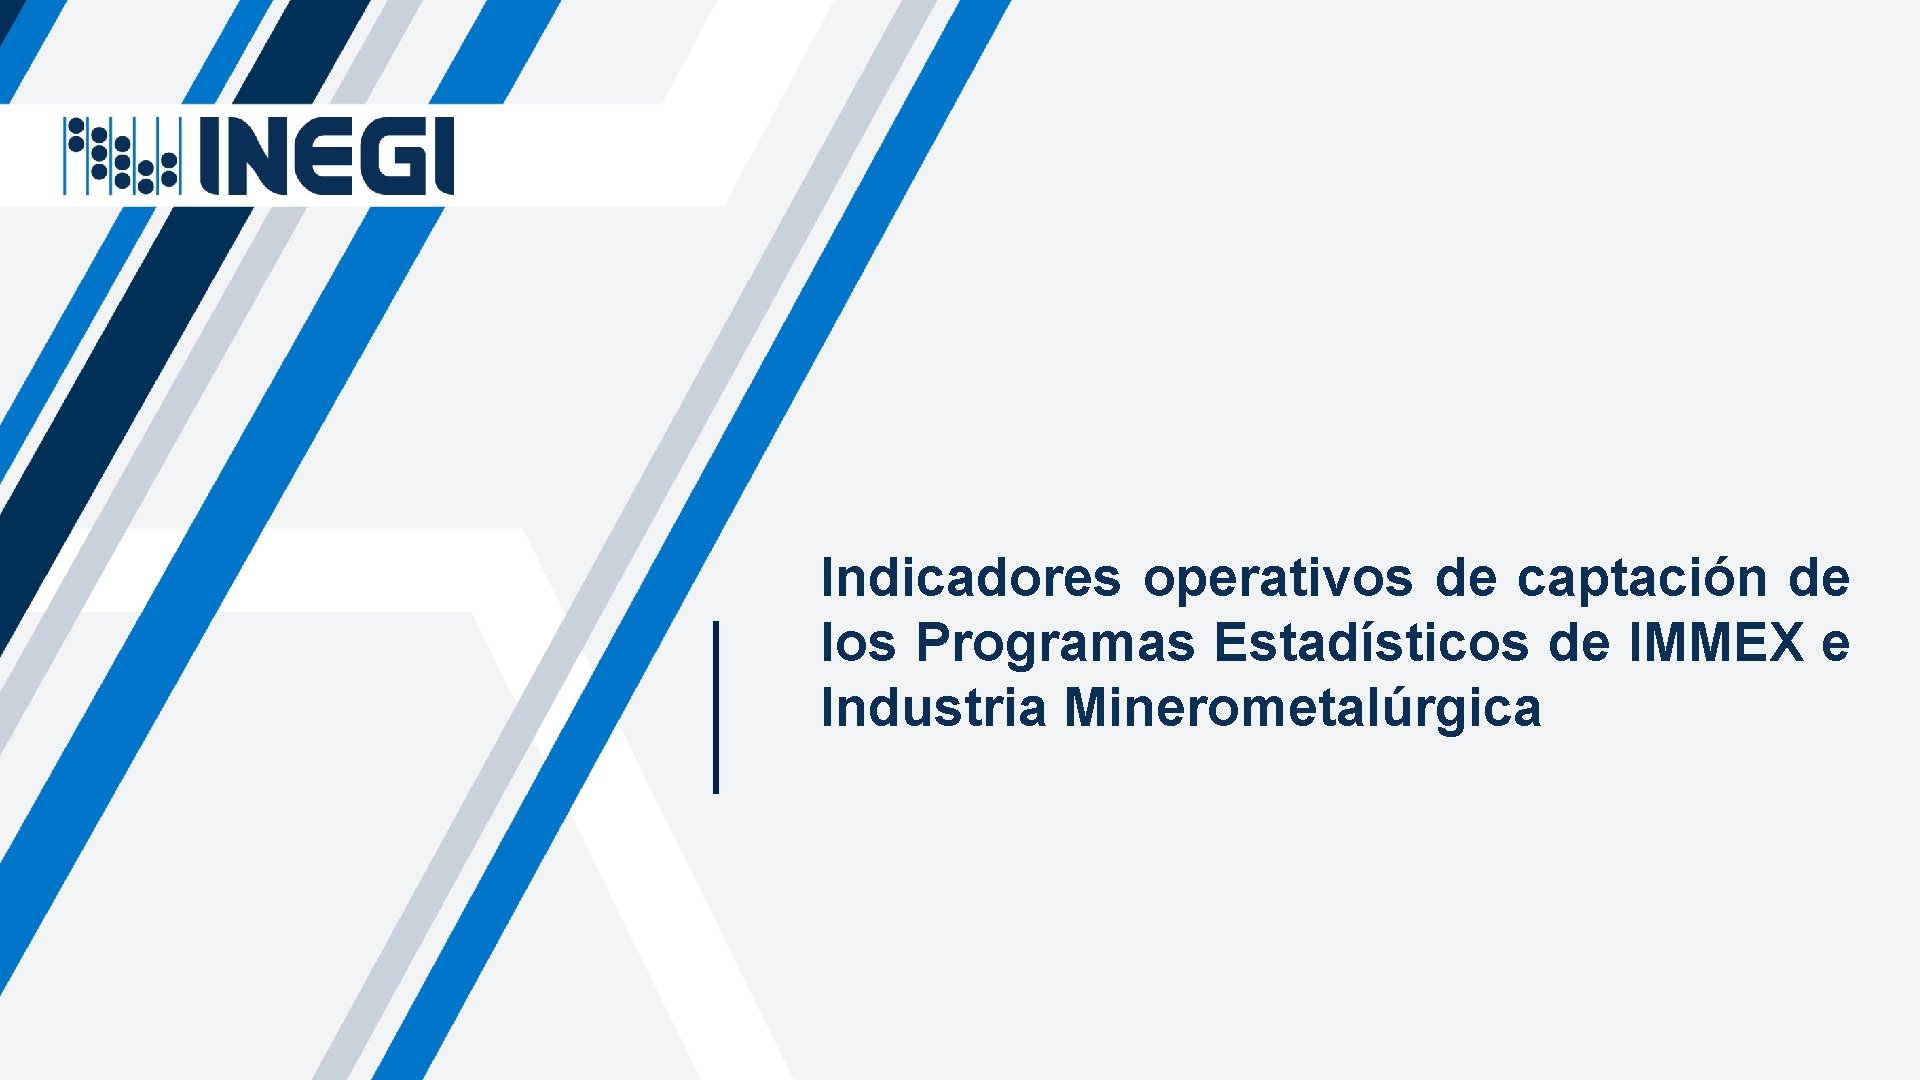 Indicadores operativos de captación de los Programas Estadísticos de IMMEX e Industria Minerometalúrgica 